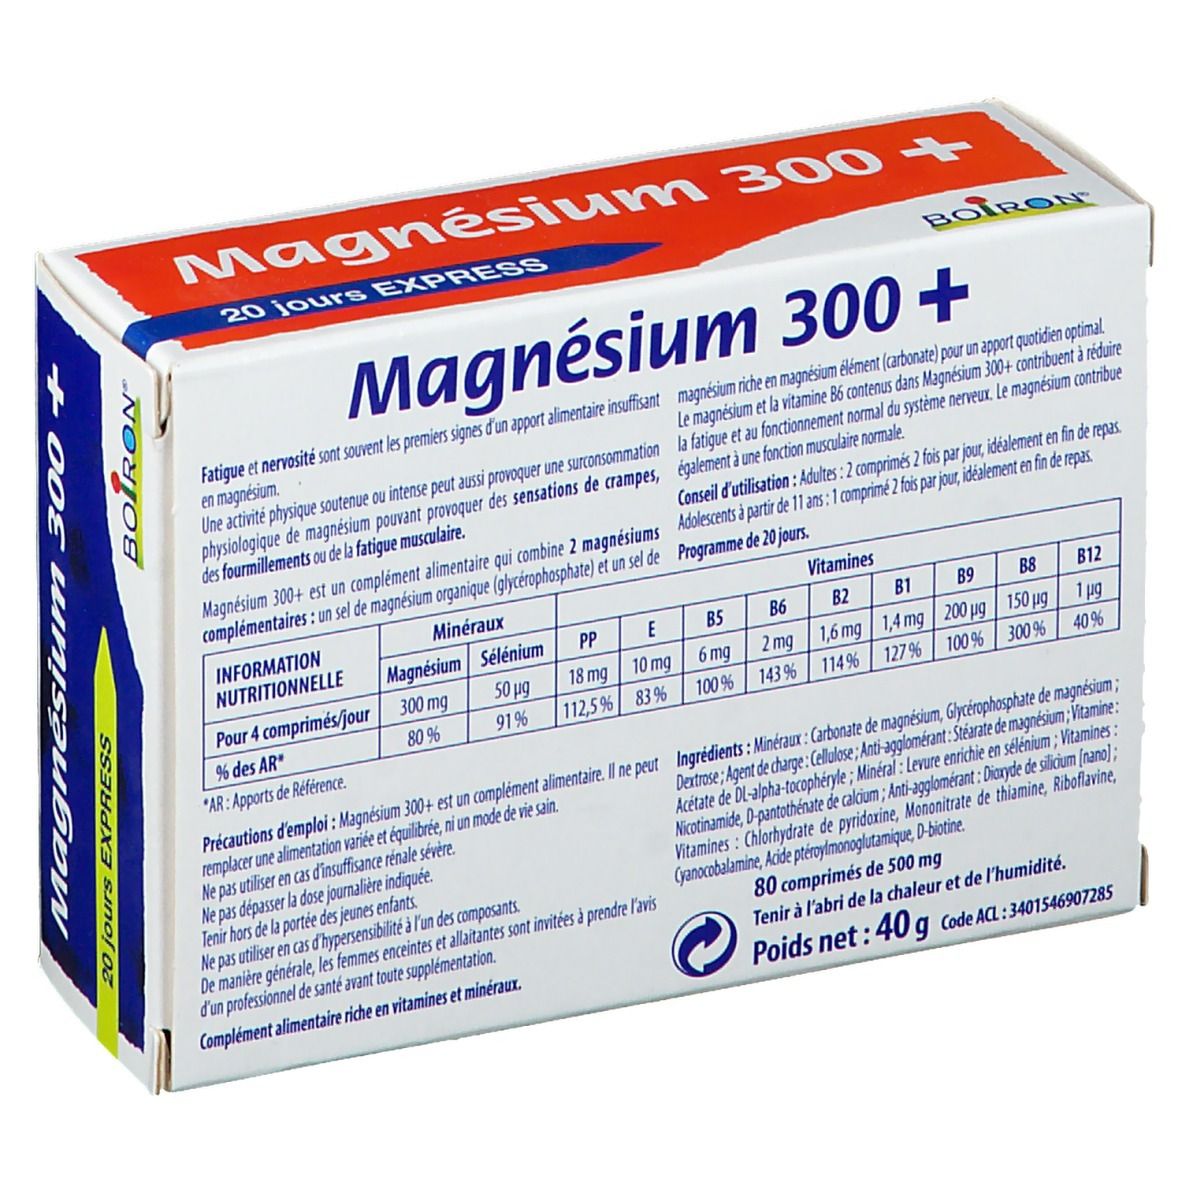 Boiron Bioptimum magnésium 300+